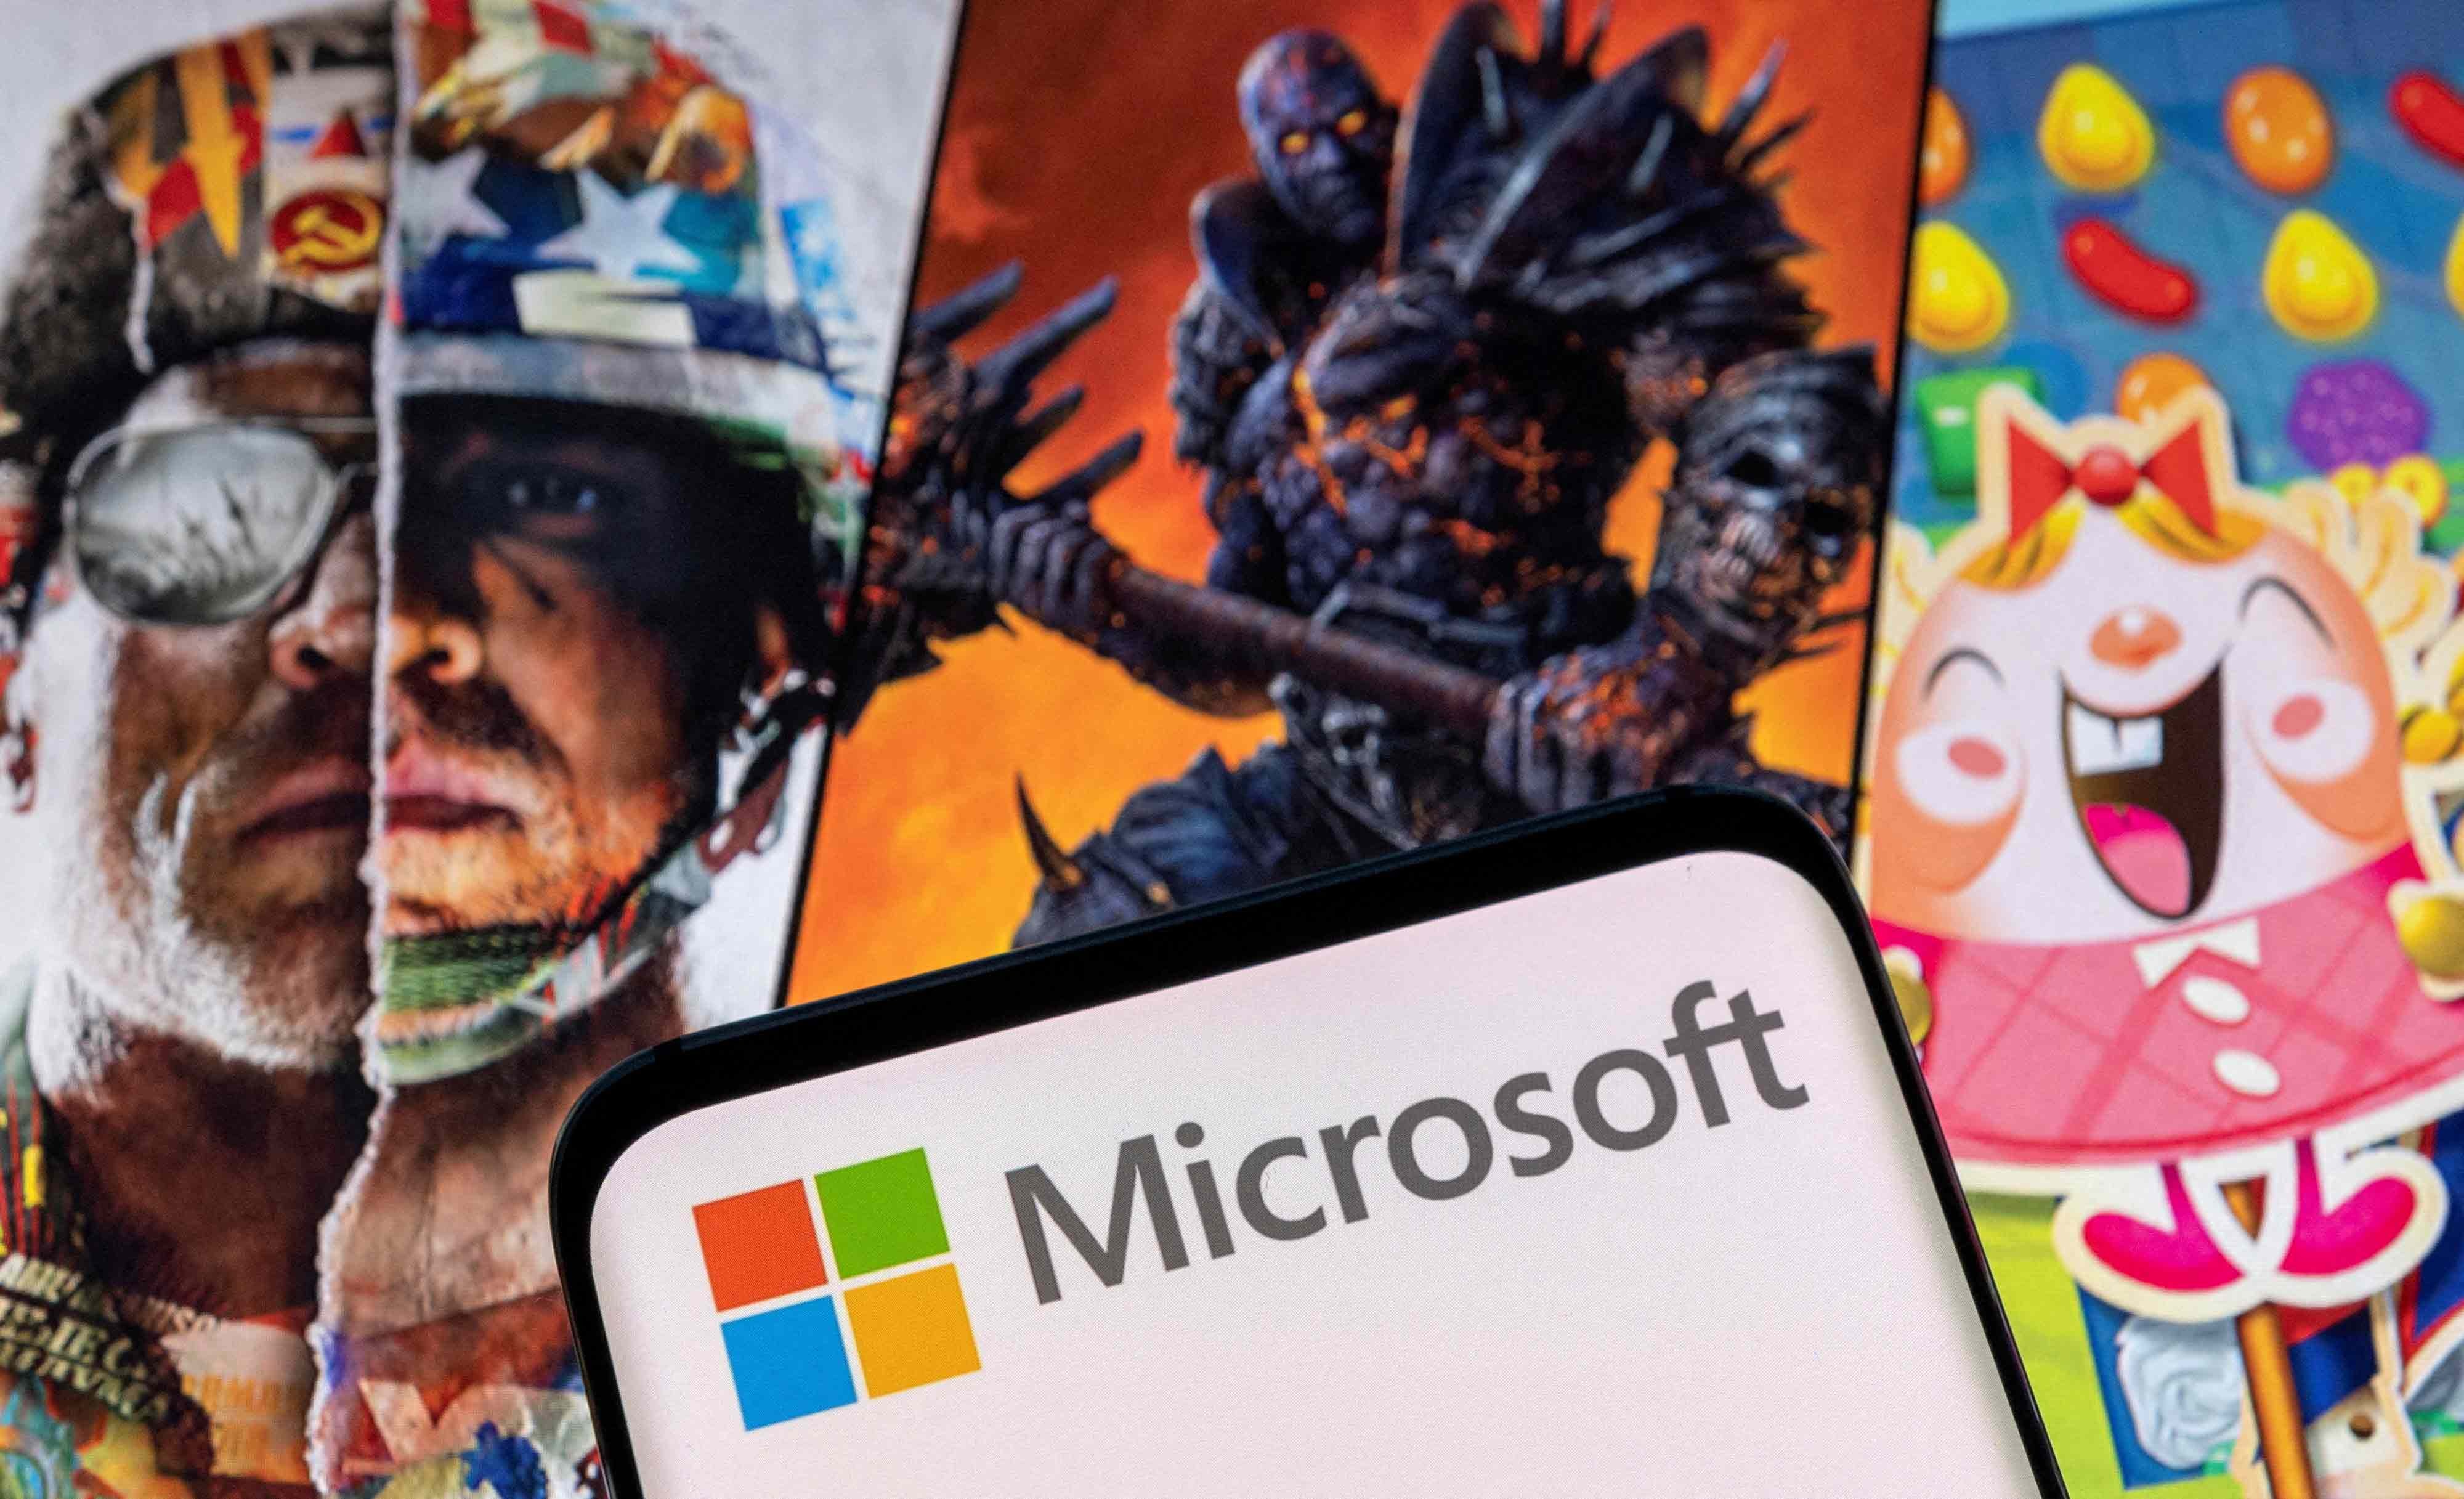 Aquisição da Activision Blizzard pela Microsoft é temporariamente bloqueada nos EUA